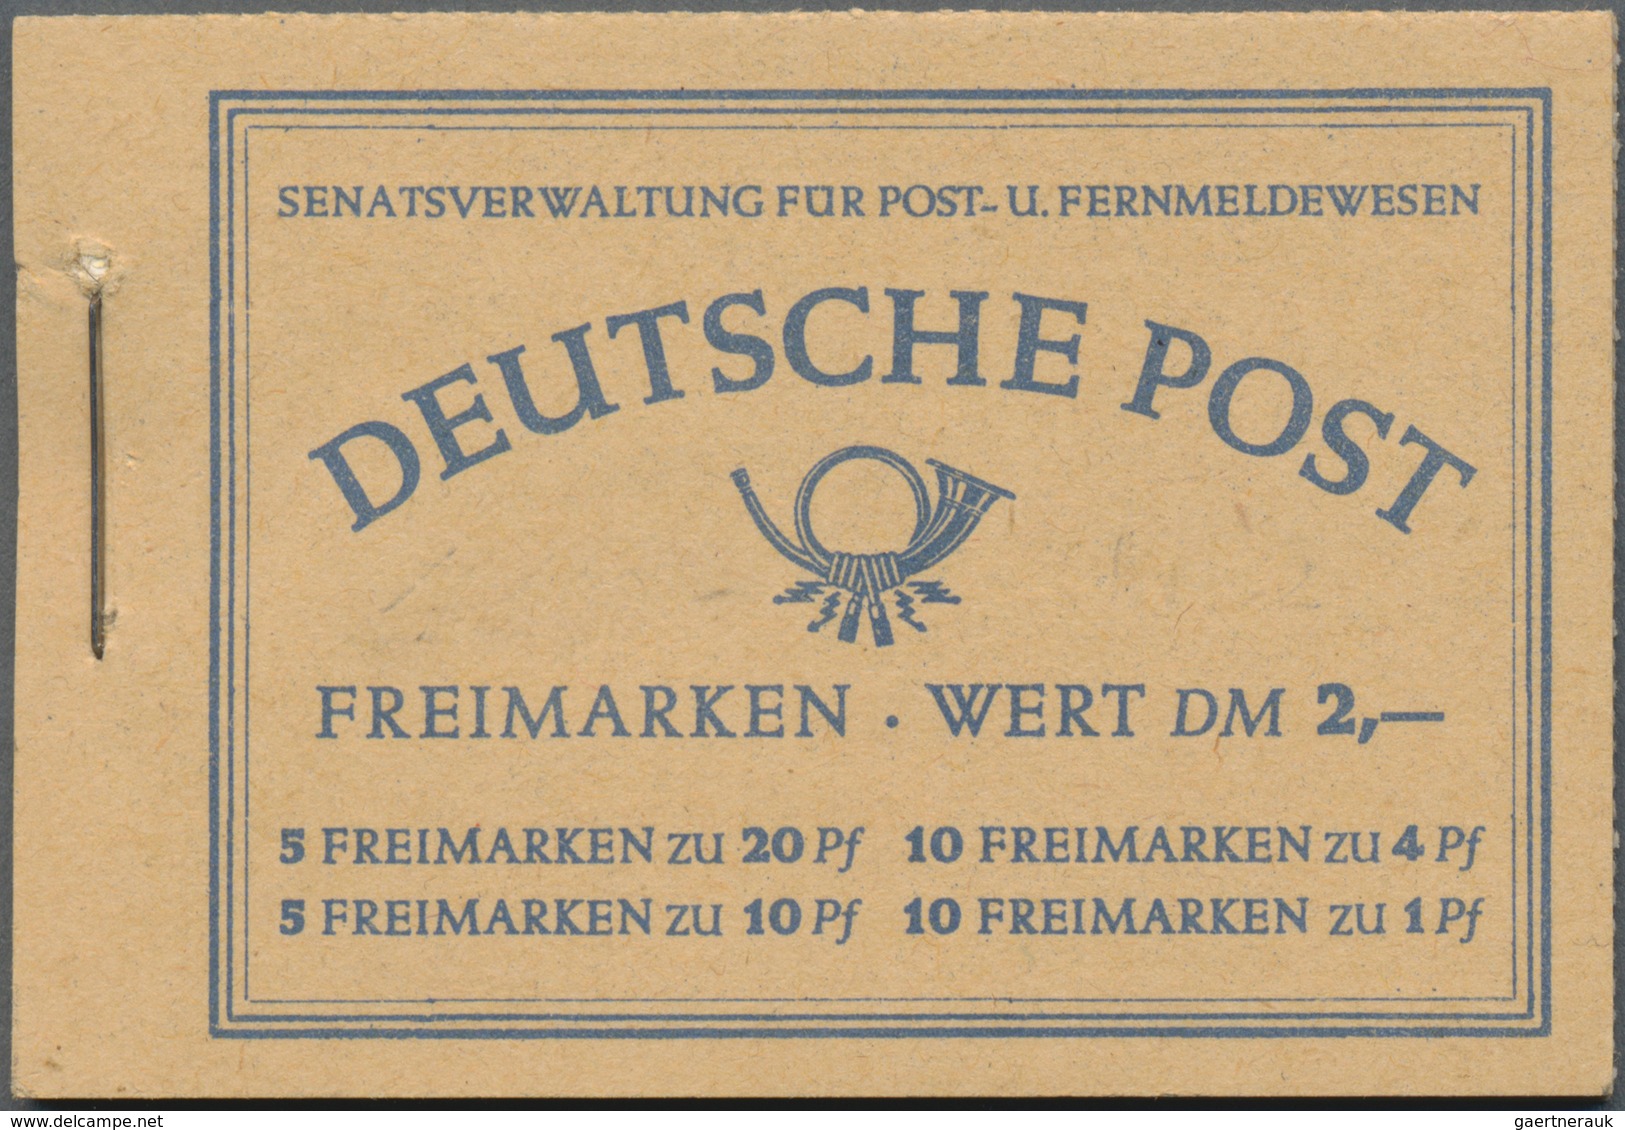 Berlin - Markenheftchen: 1952, Komplettes, Tadellos Postfrisches MH 2 Berliner Bauten, Mi. 1.300,- € - Postzegelboekjes